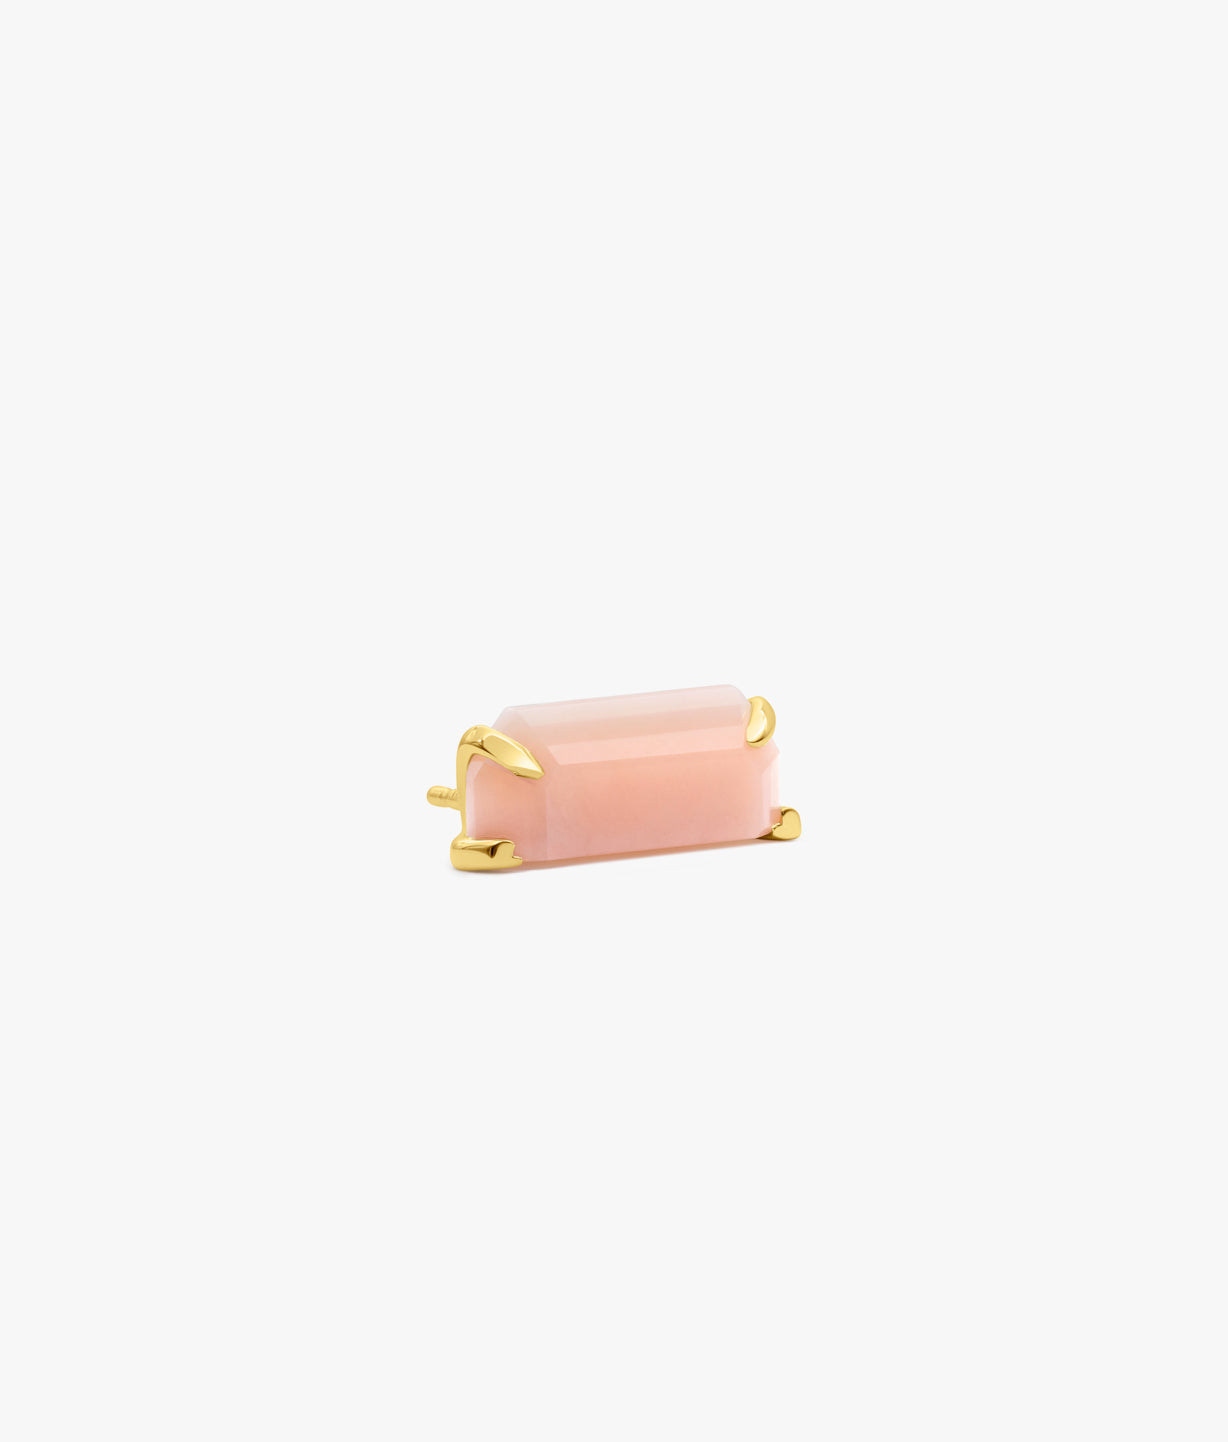 Half Cut Pink Opal Earring